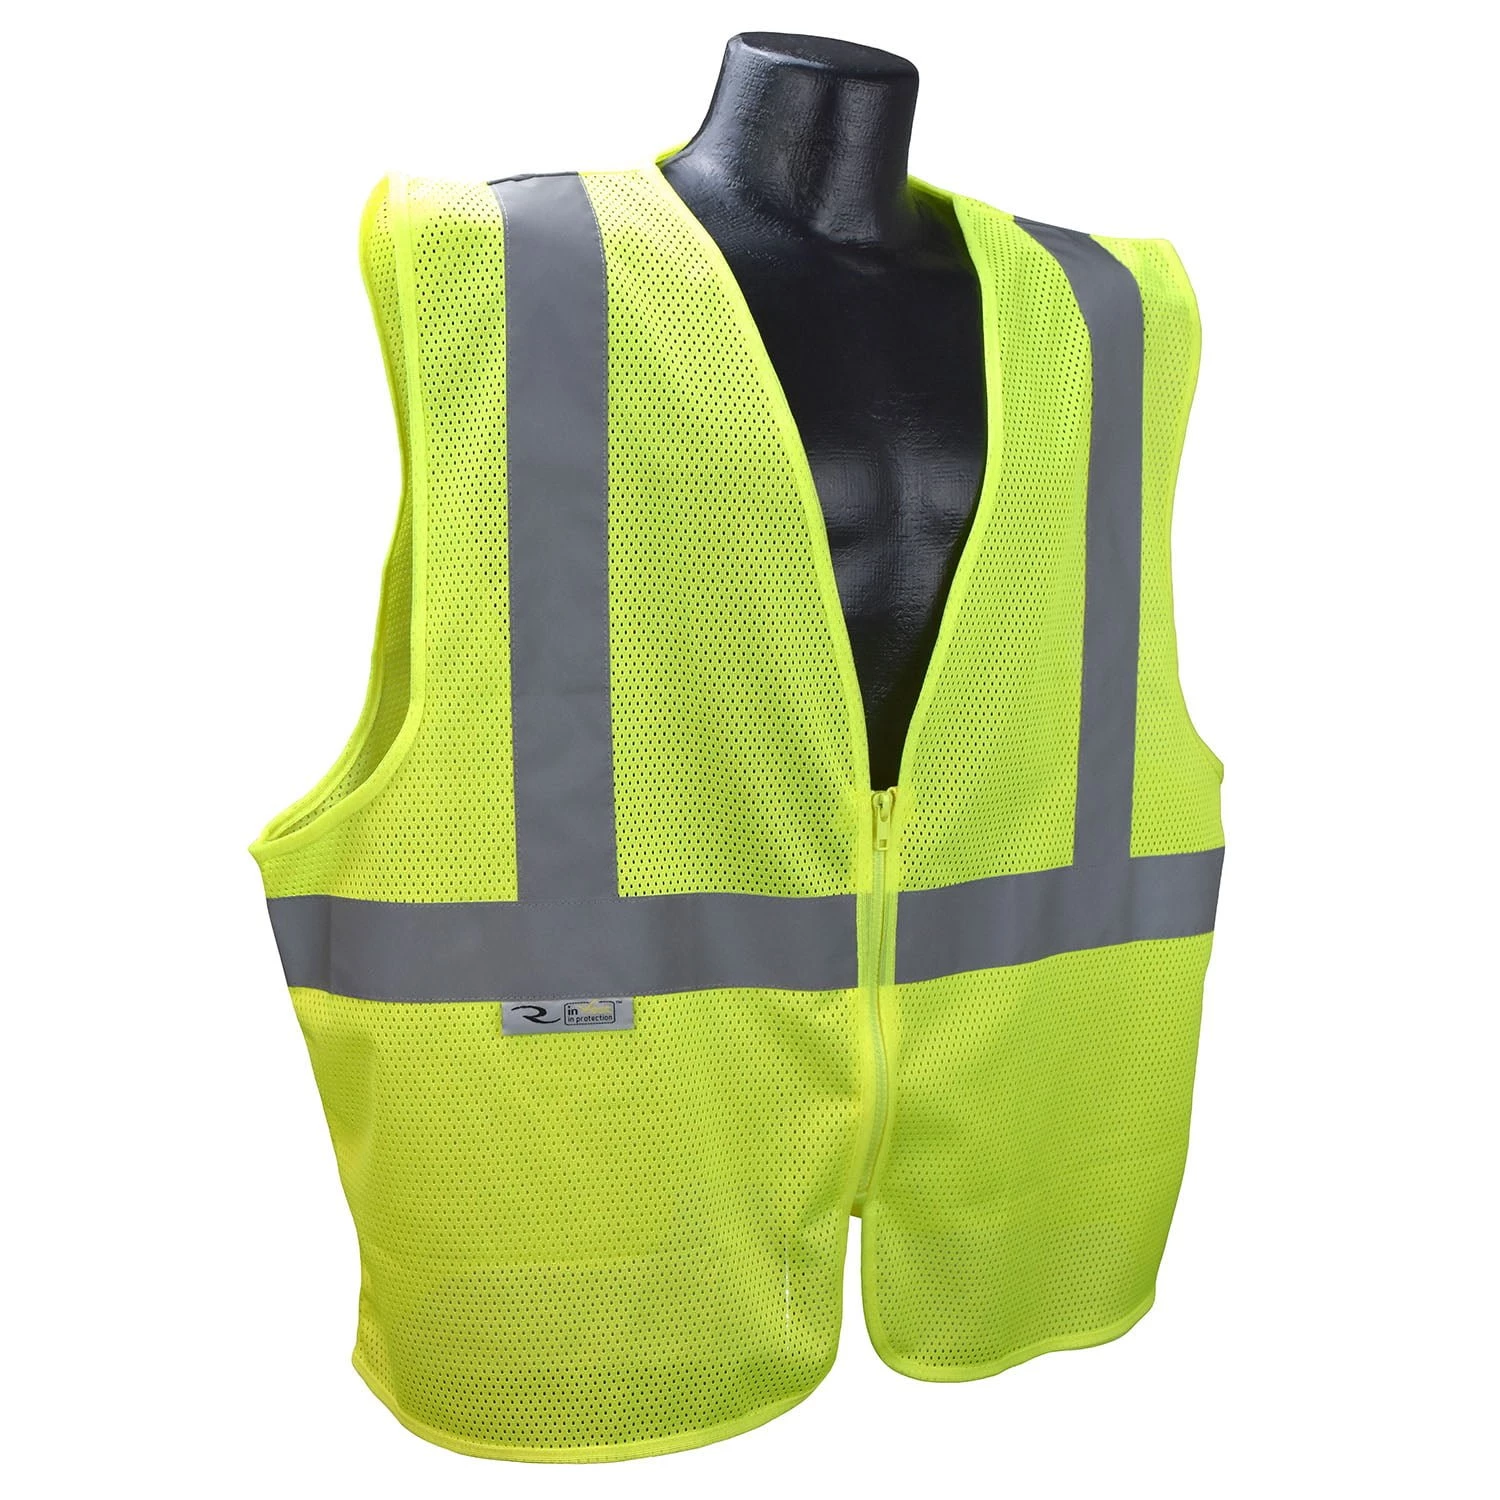 Radians SVE1 reflective safety vest